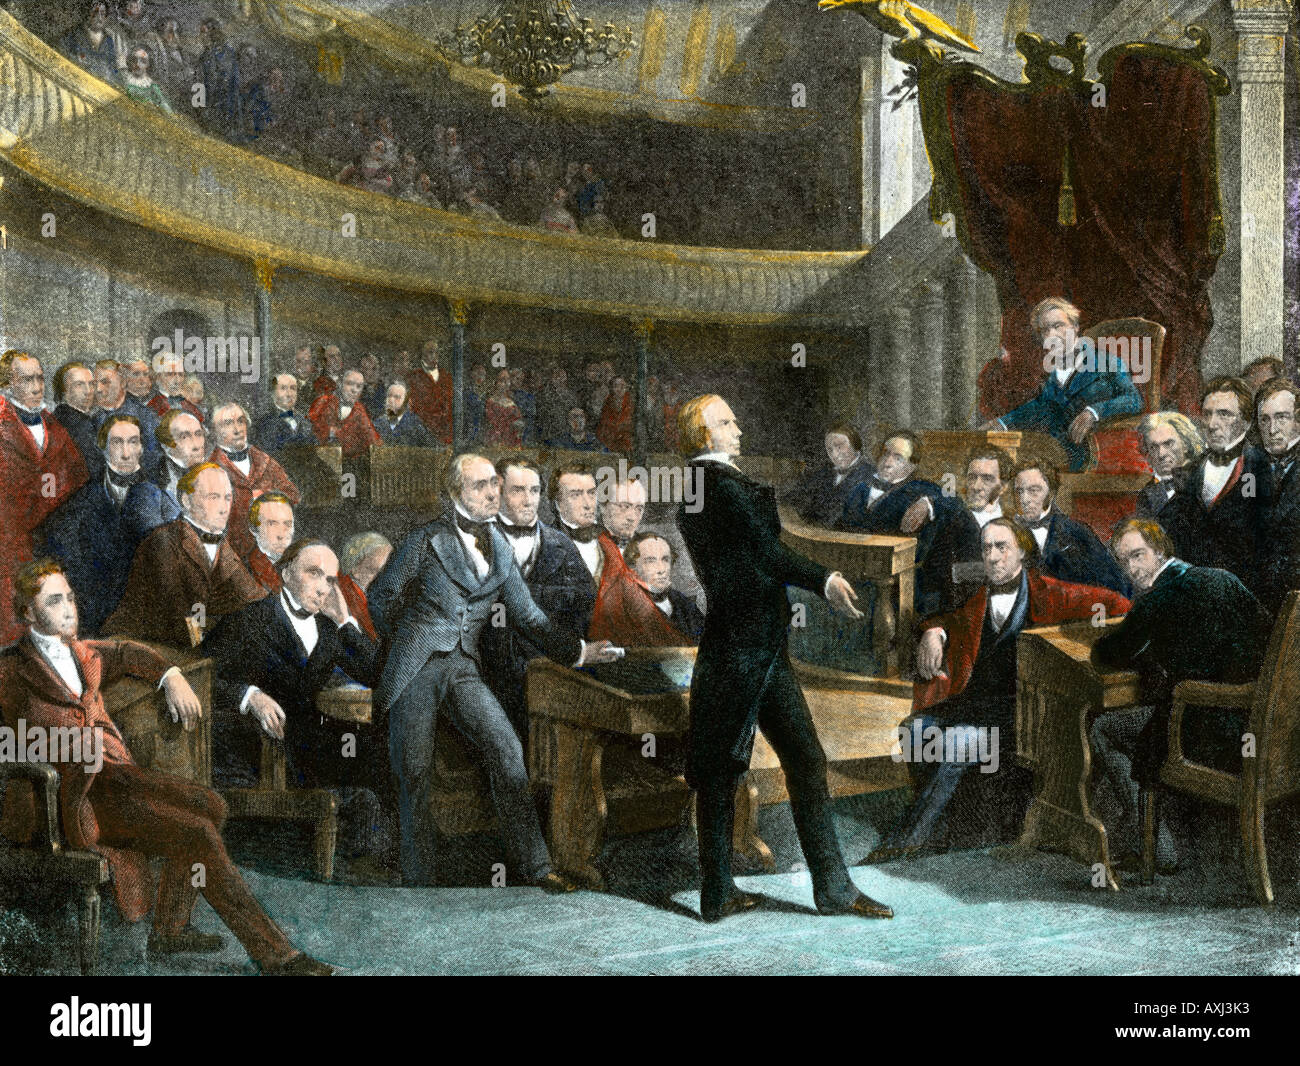 Henry Clay drängt die US-Senat zu erlassen, um den Kompromiß von 1850 Bürgerkrieg abzuwenden. Handcolorierte halftone einer Abbildung Stockfoto